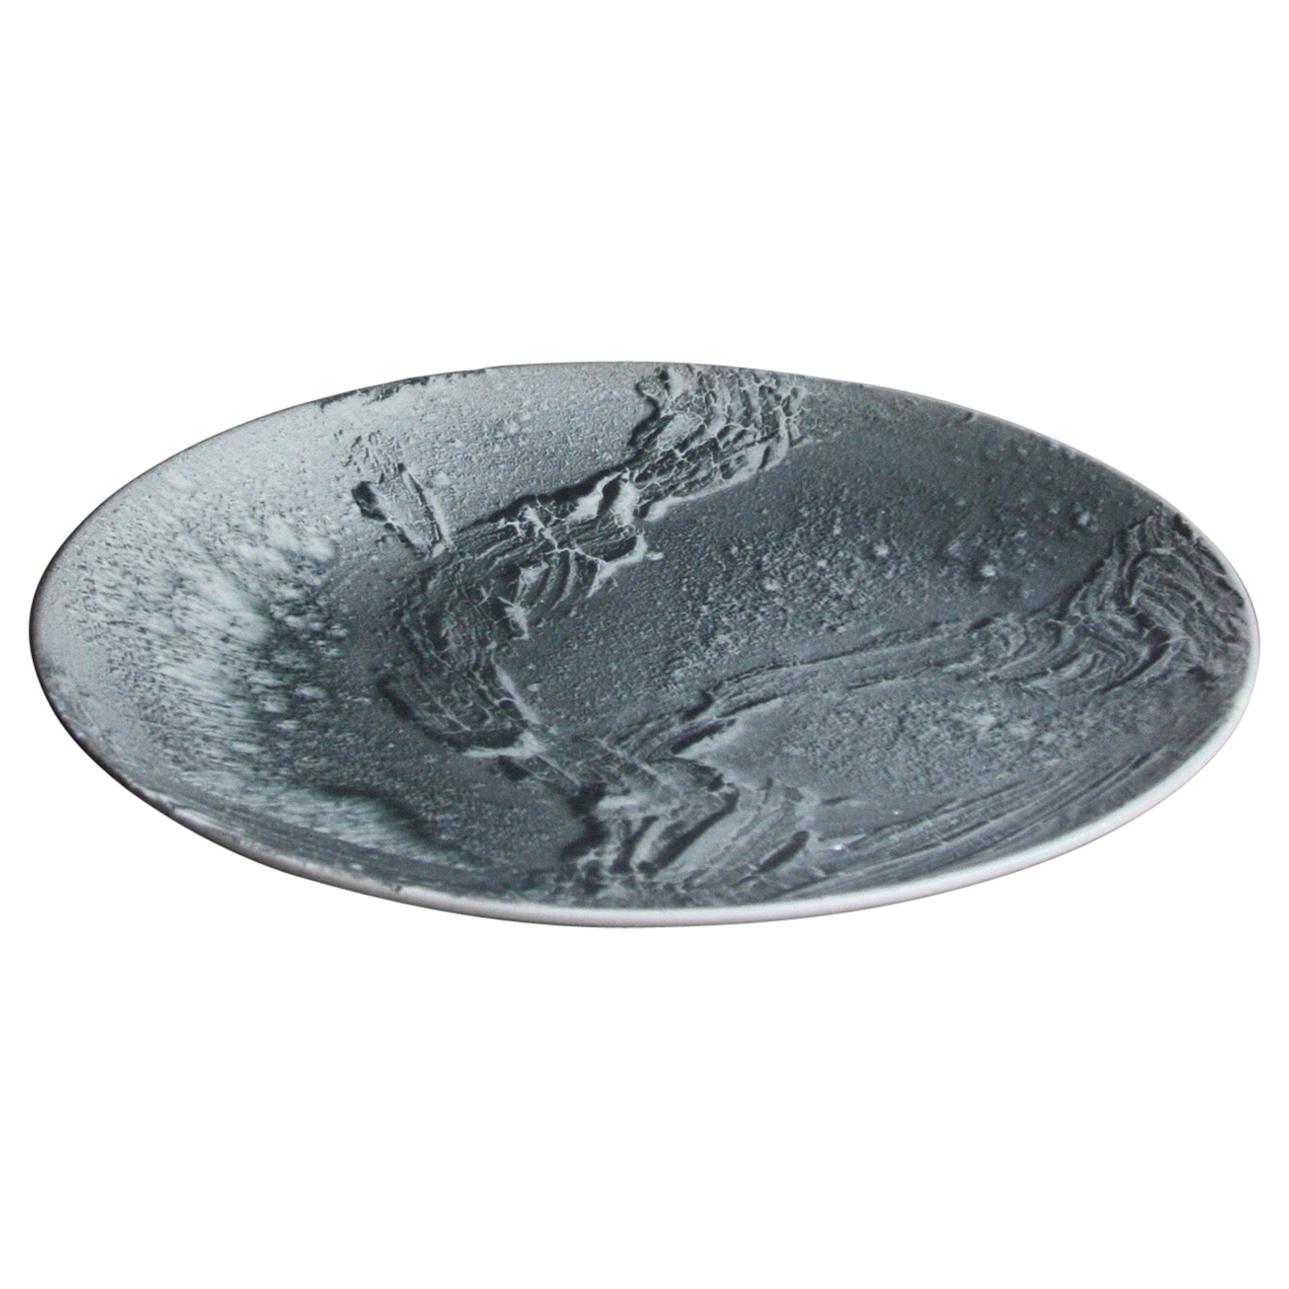 Kasper Würtz One Off Stoneware Art Plate Monochromatic Black Glaze